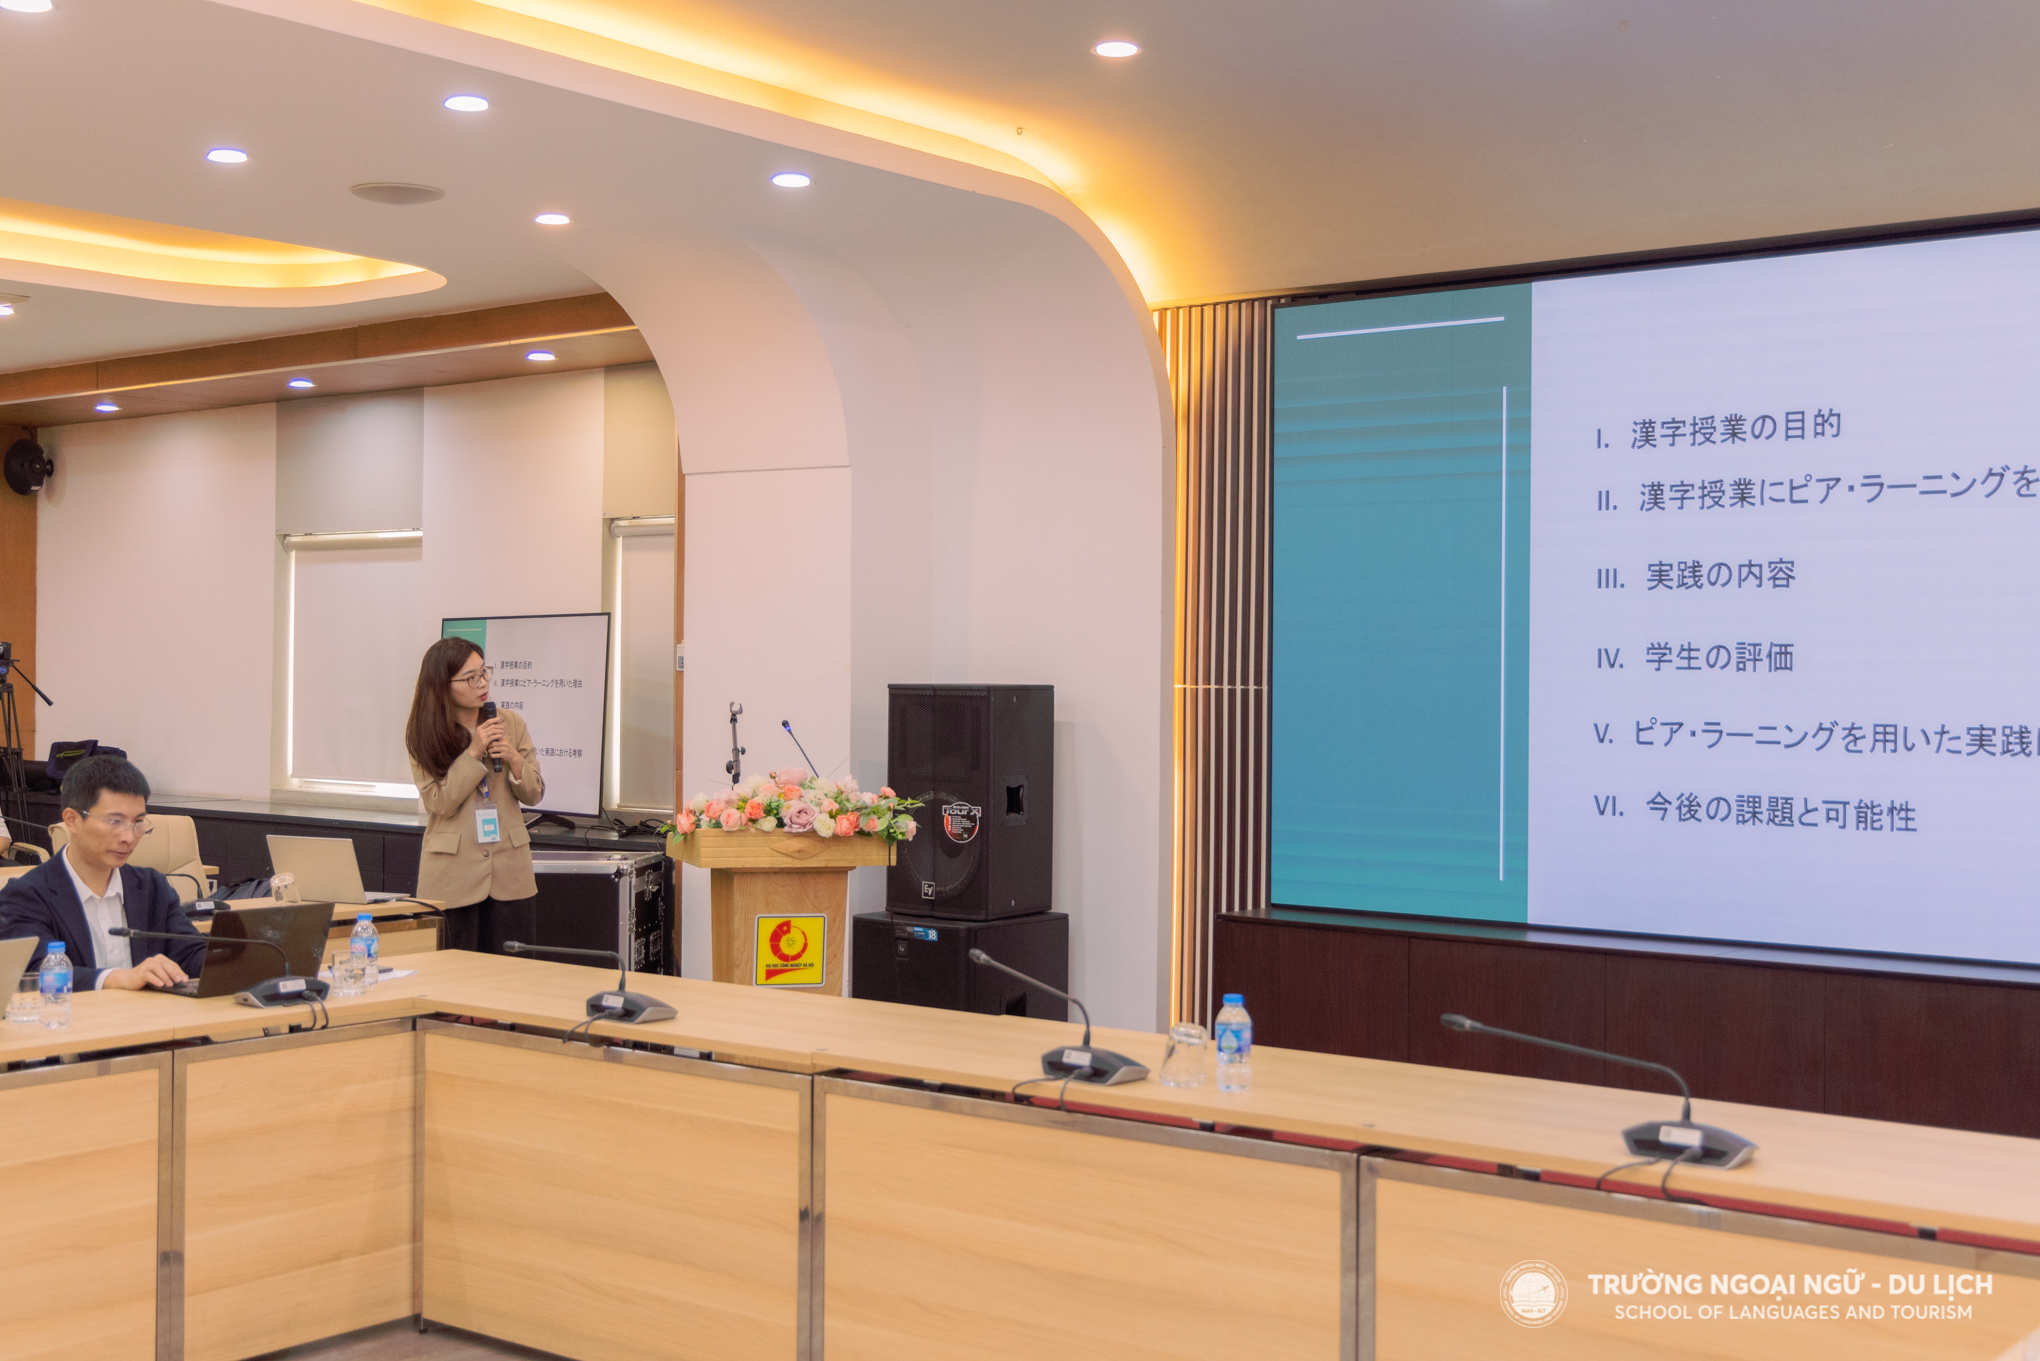 Giảng viên Trần Thị Thanh Trang – Khoa Ngôn ngữ Nhật Bản trình bày về việc sử dụng phương pháp Peer Learning trong giờ học Hán tự